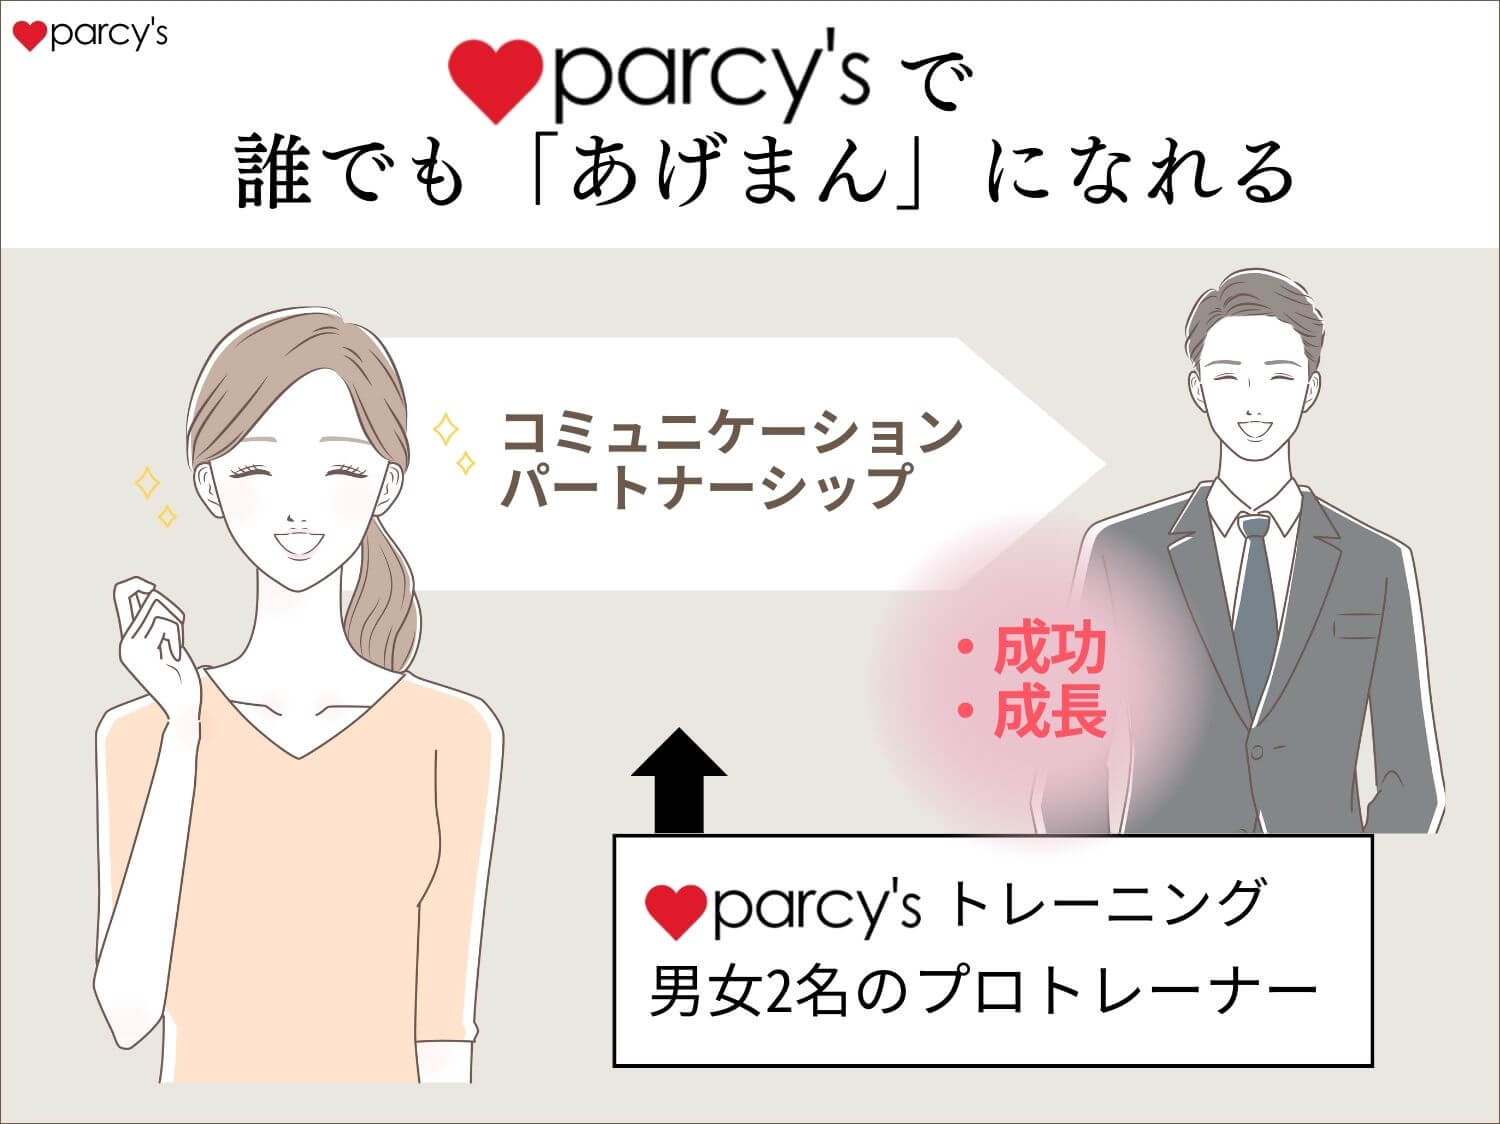 parcy'sプログラムでは、セックス関係なくコミュニケーションやパートナーシップで「誰でも」あげまんになれる。